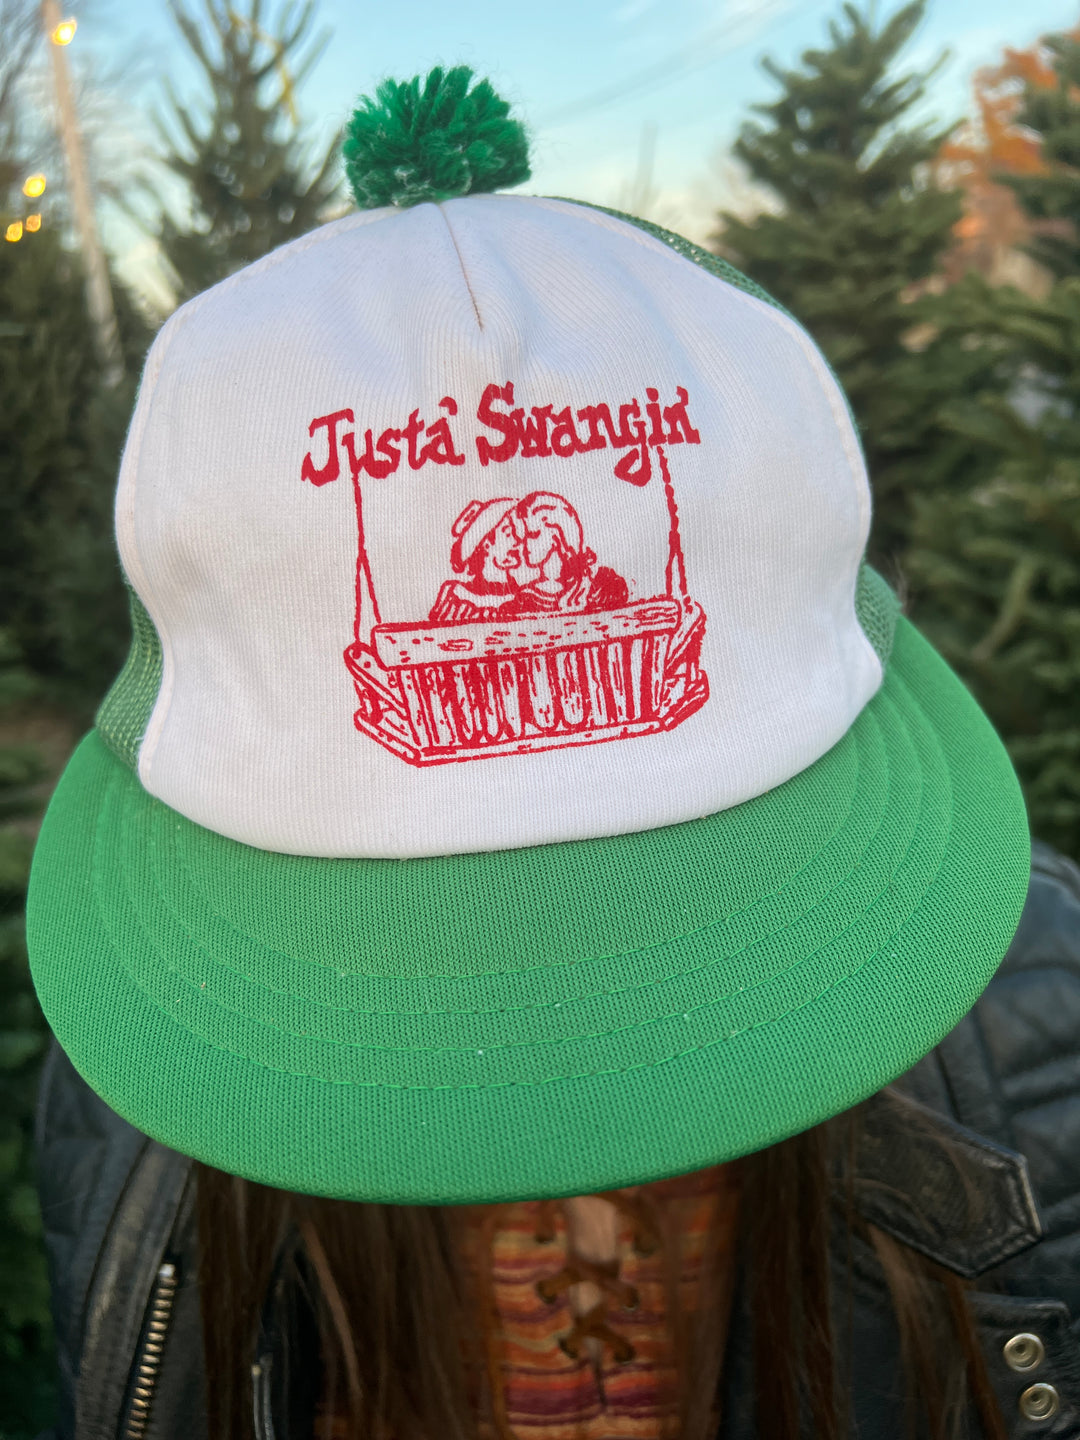 Green Vintage Trucker Hat: Just A Swangin', Kap Int'l Inc.